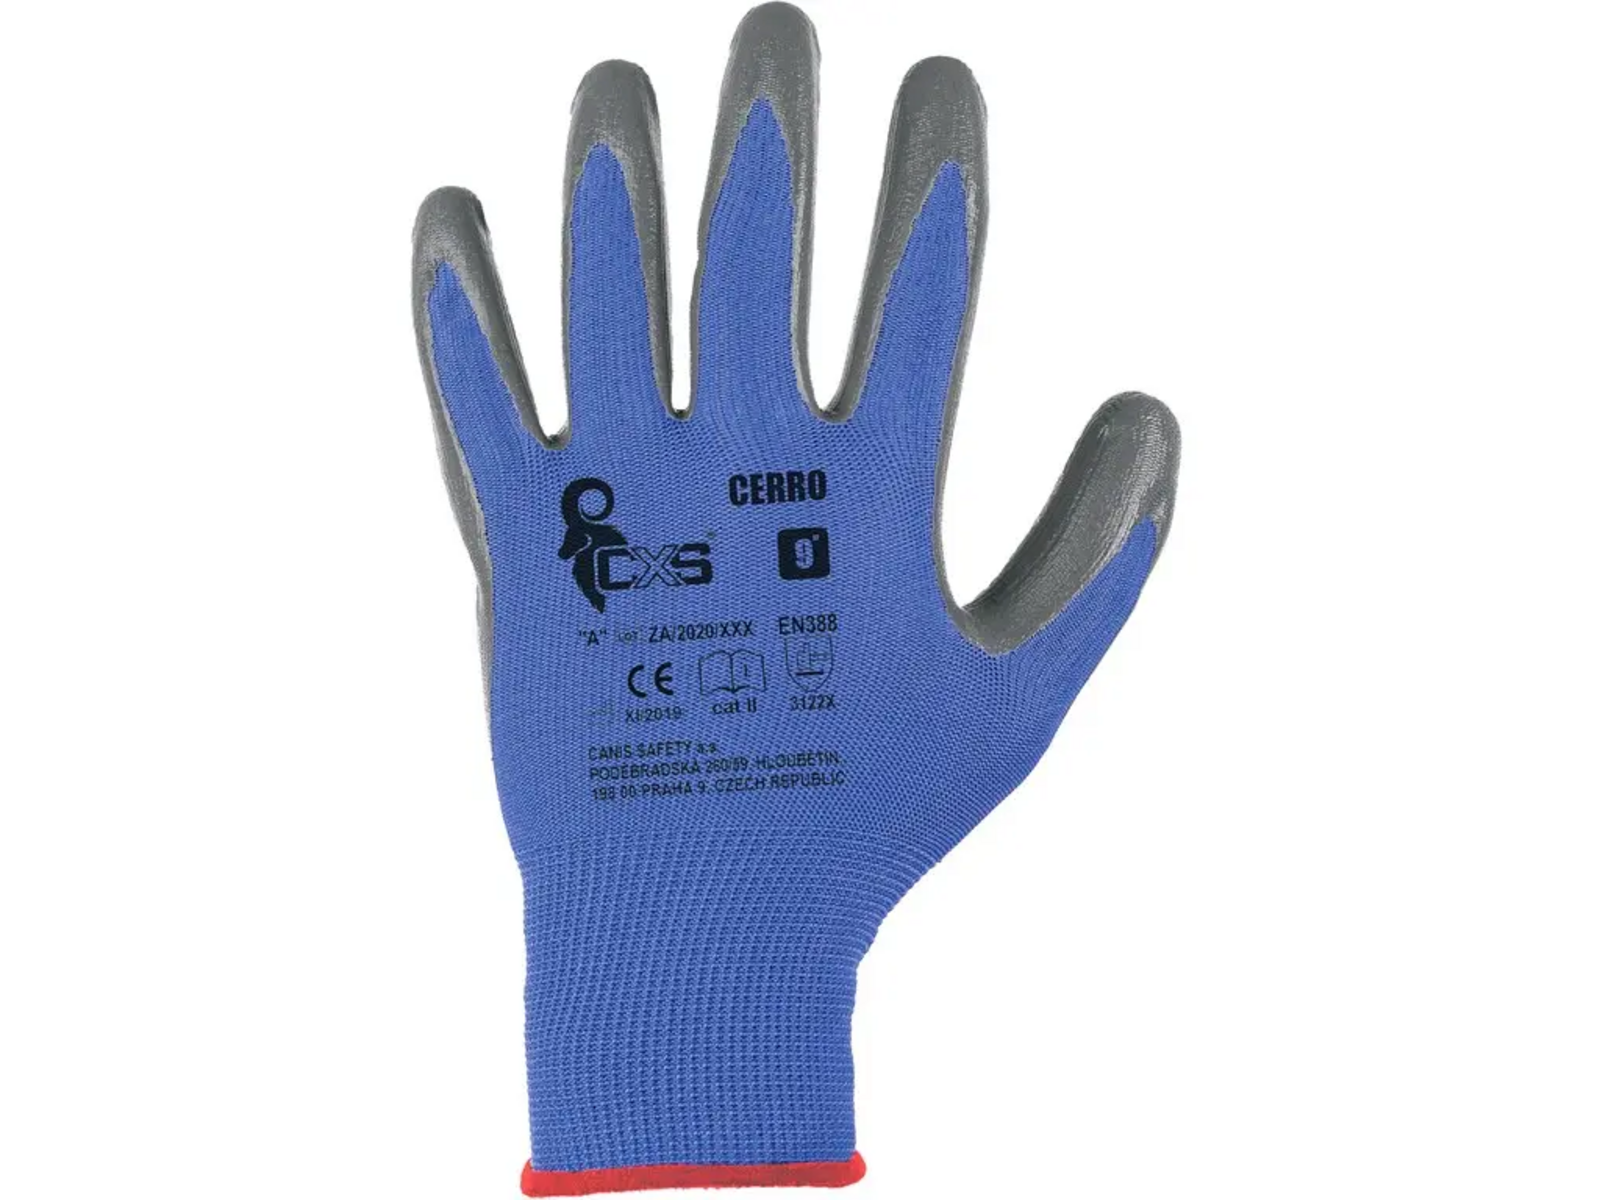 Povrstvené rukavice CXS Cerro - veľkosť: 9/L, farba: modrá/sivá